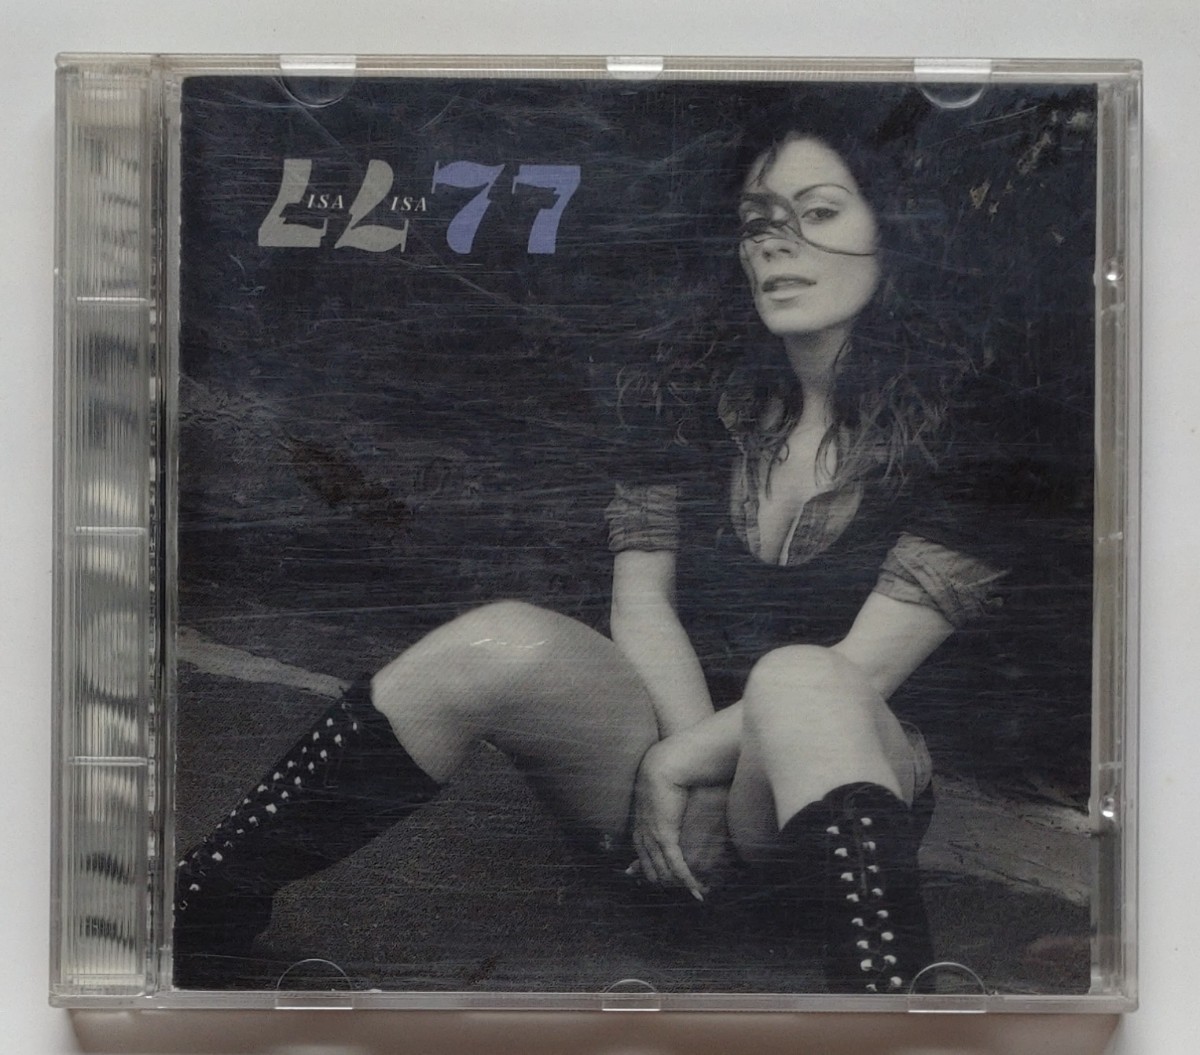 LISA LISA 77 ＣＤ ★★PENDULUM カナダ★★